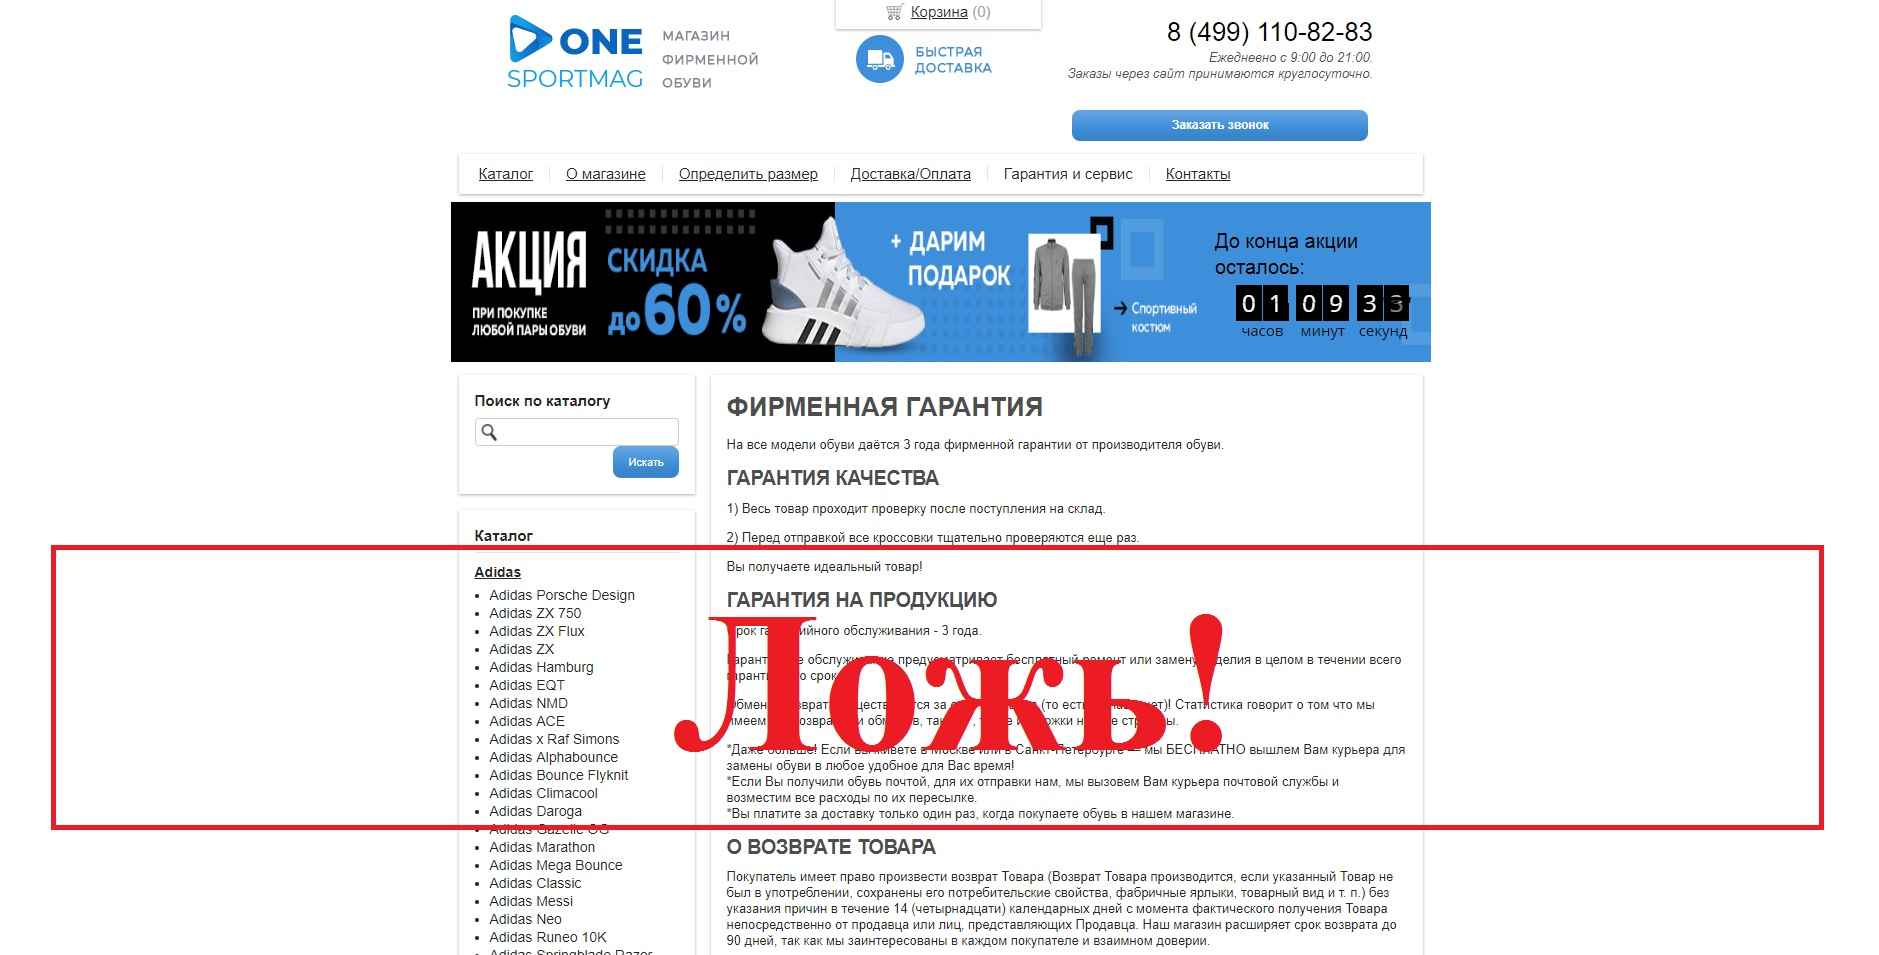 Магазин one-sportmag.ru – отзывы. Обман, или нет?